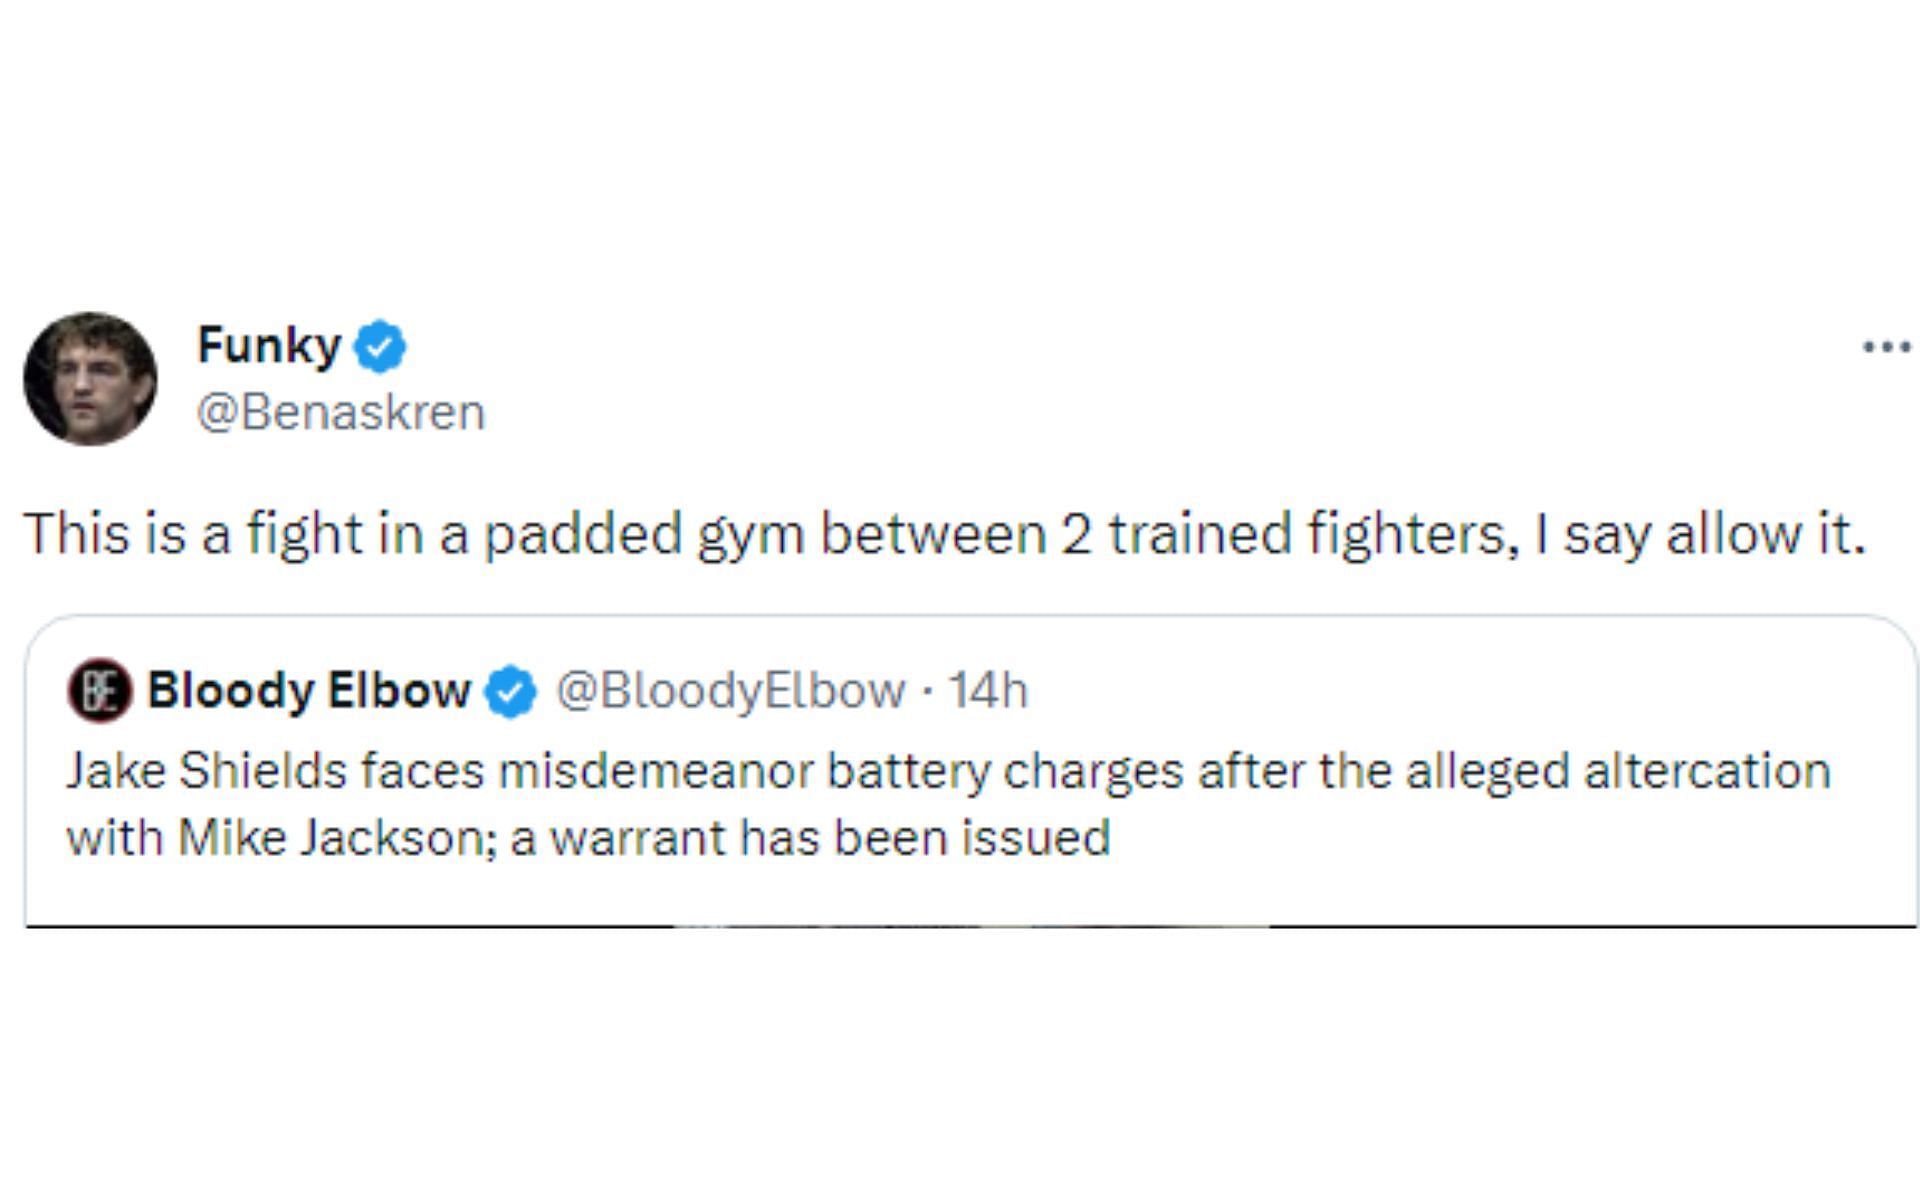 Ben Askren tweet regarding the altercation